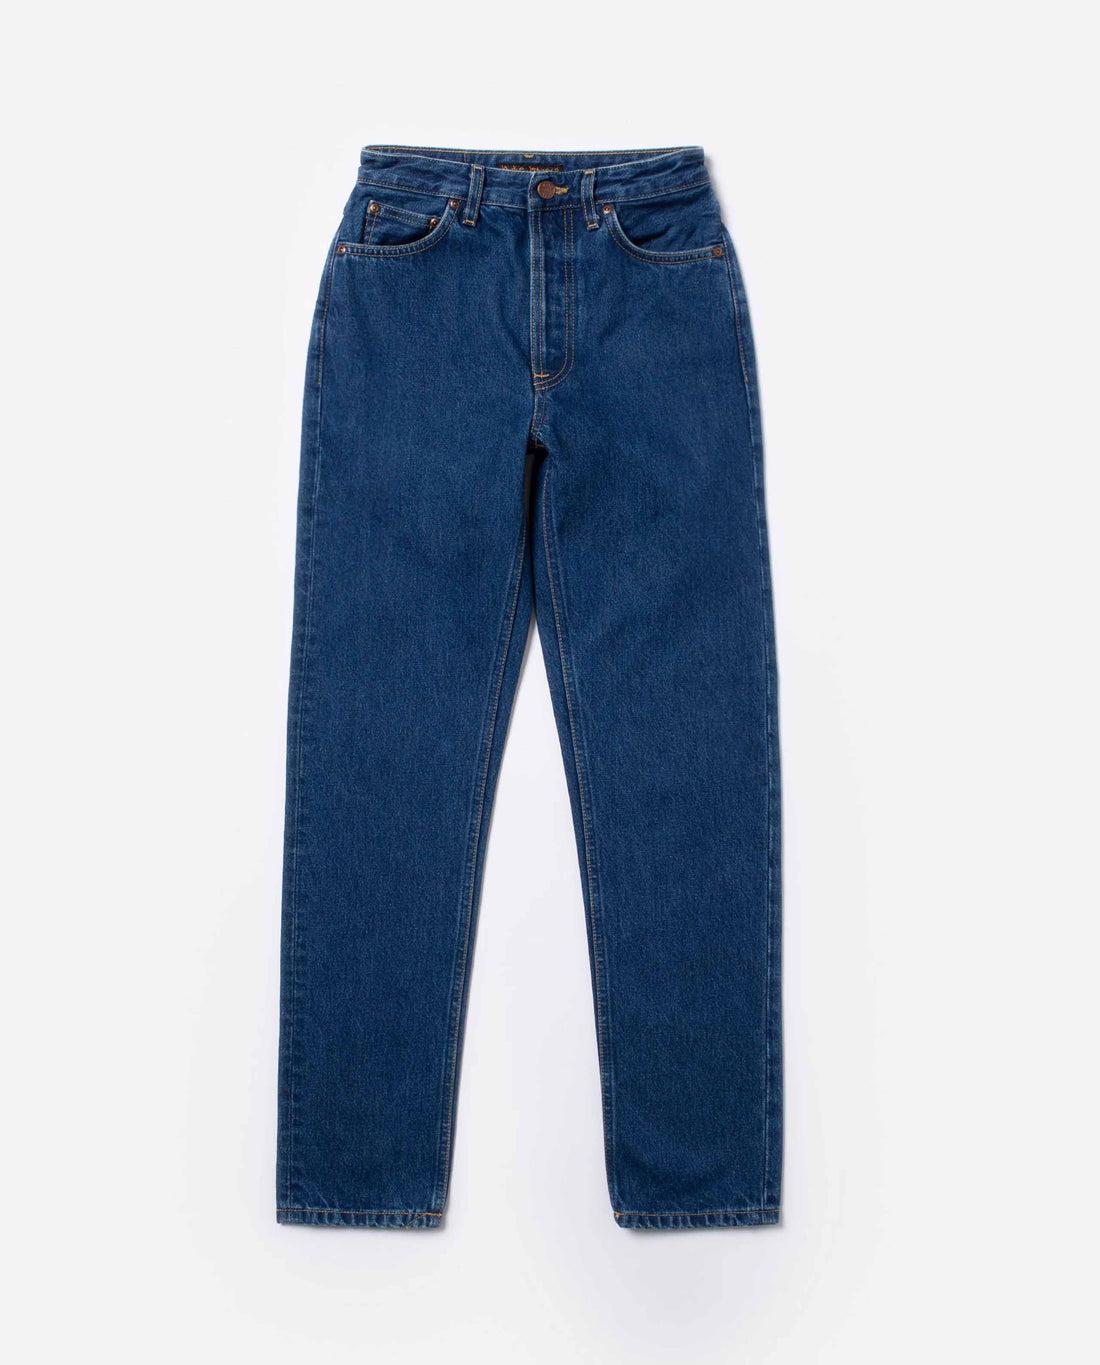 Marché commun jean droit en coton bio bleu nudie jeans